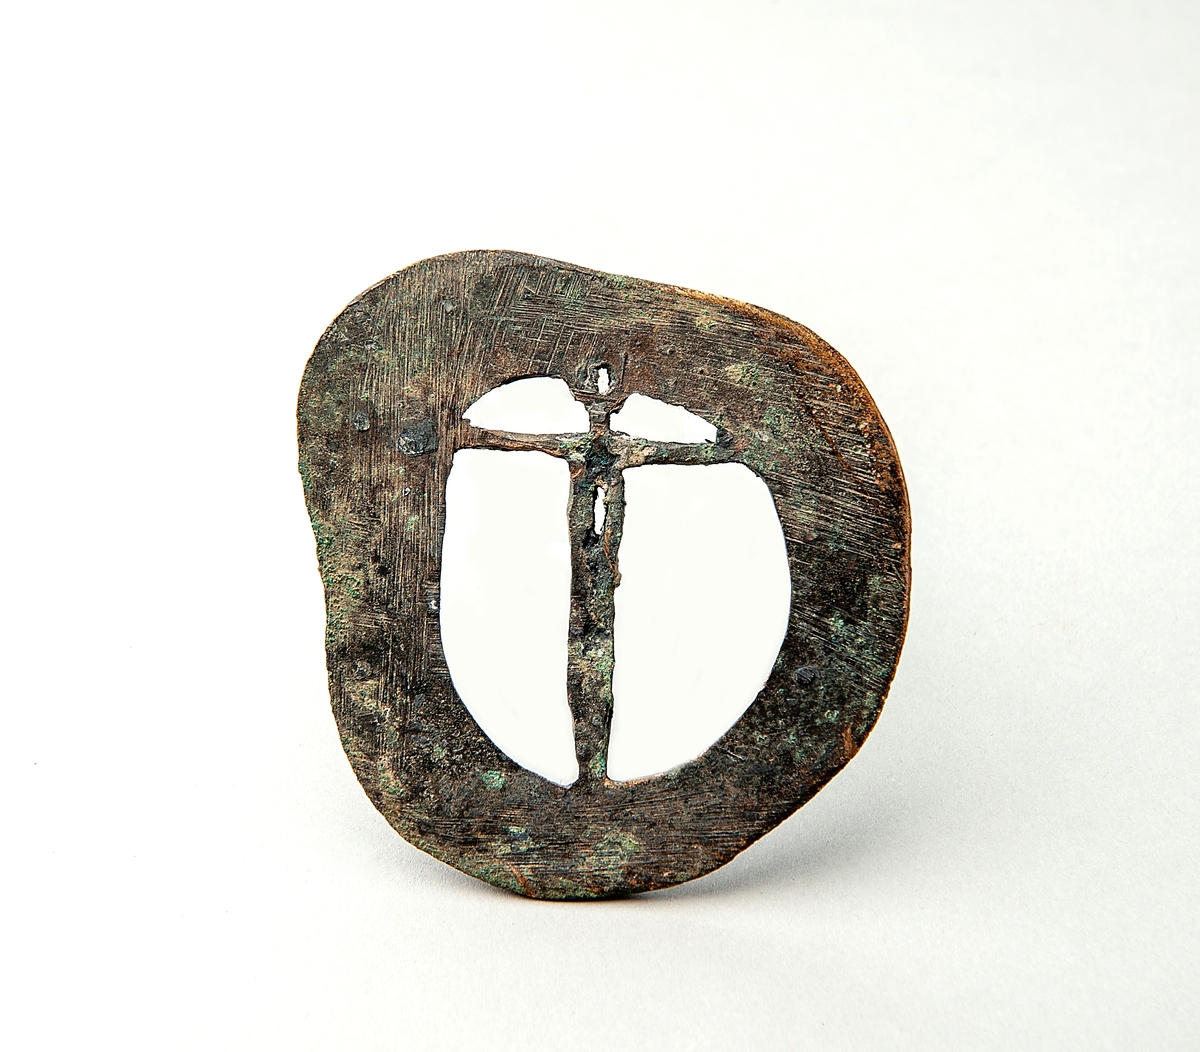 Bronsföremål, möjligen ett spänne eller medaljong av brons. Föremålet är 7,5x7 cm och har form av en kristusfigur infälld i en gjuten ram.